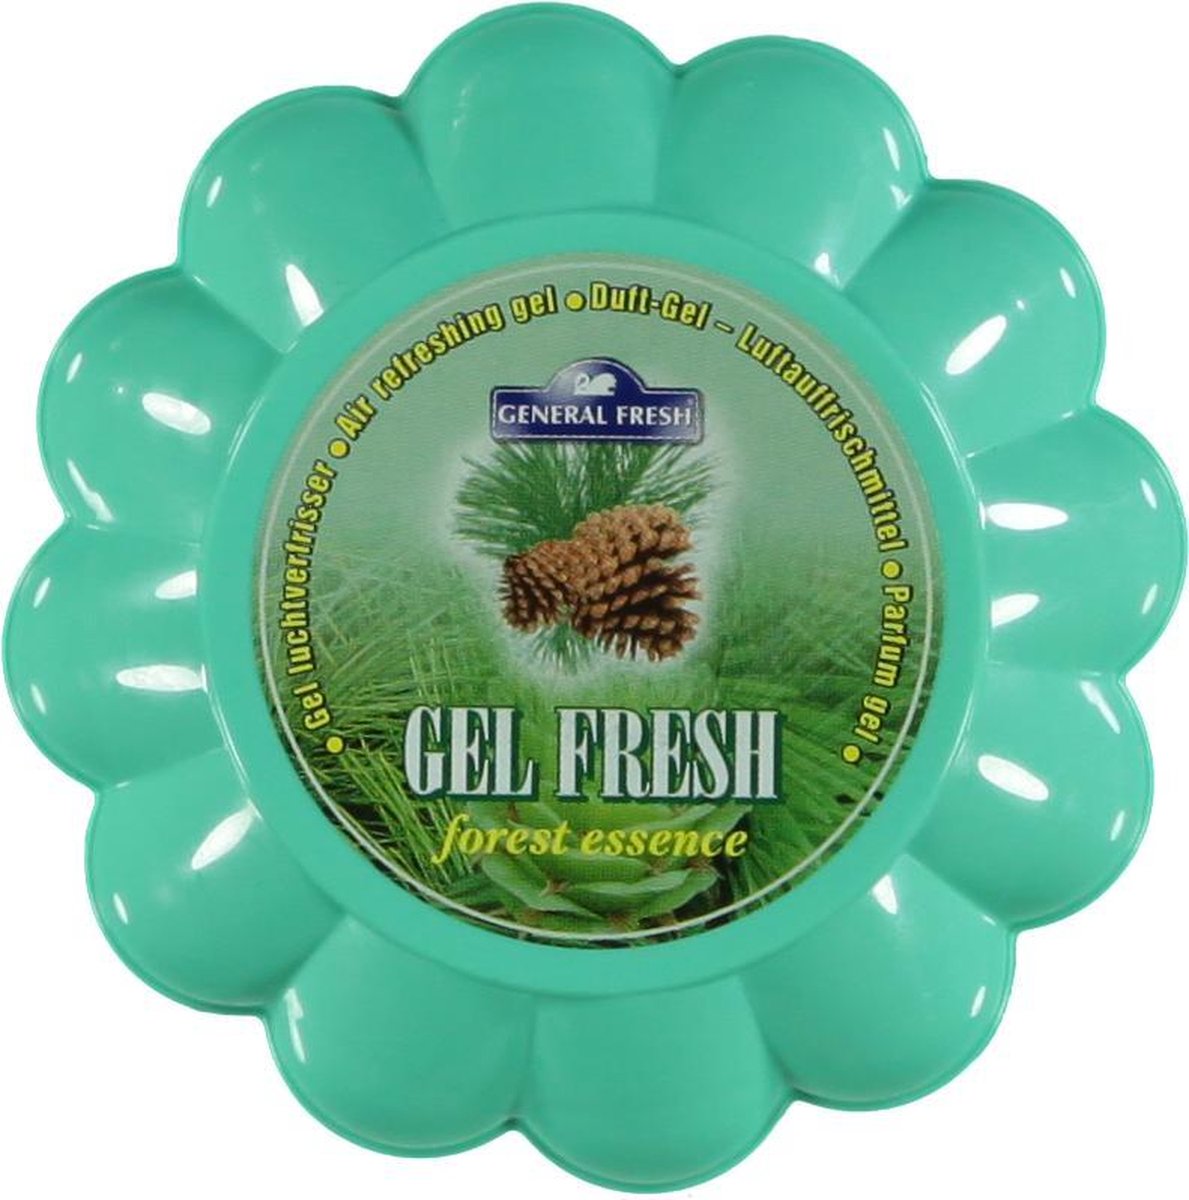 General fresh at home - Parfum gel - Gel luchtverfrisser - Gel fresh - FOREST